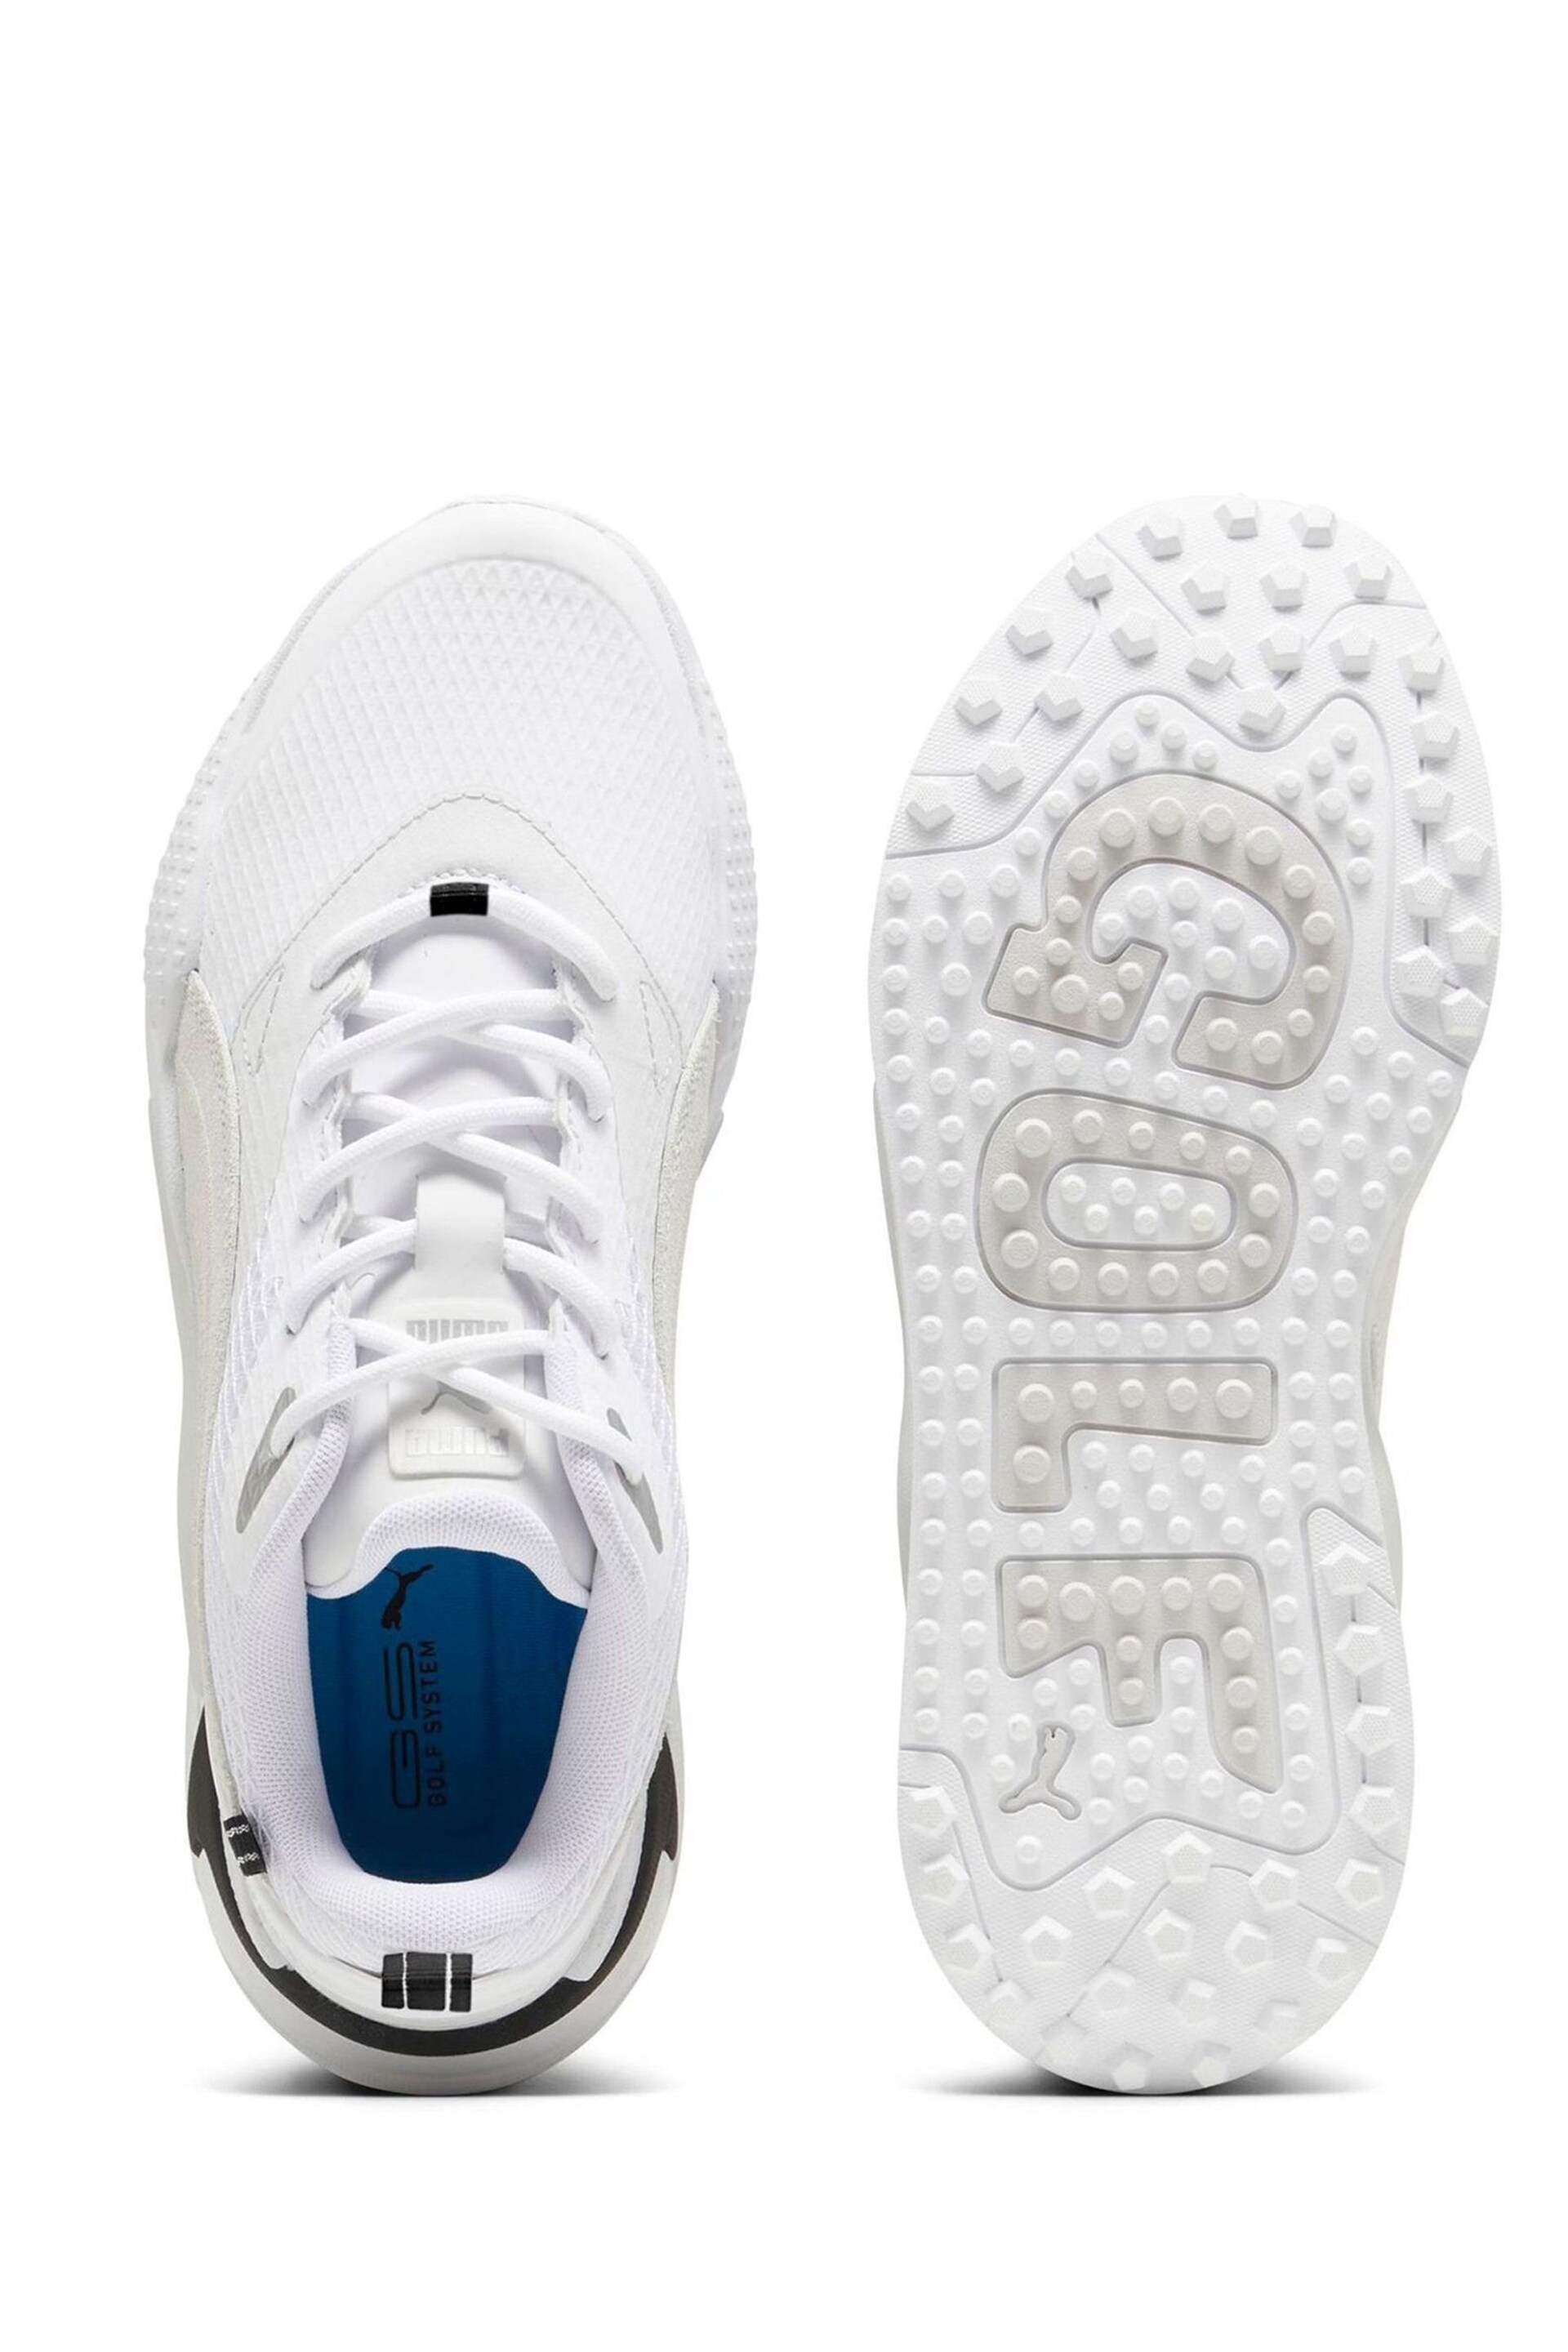 Puma White Mens GS-X Efekt Golf Shoes - Image 2 of 4